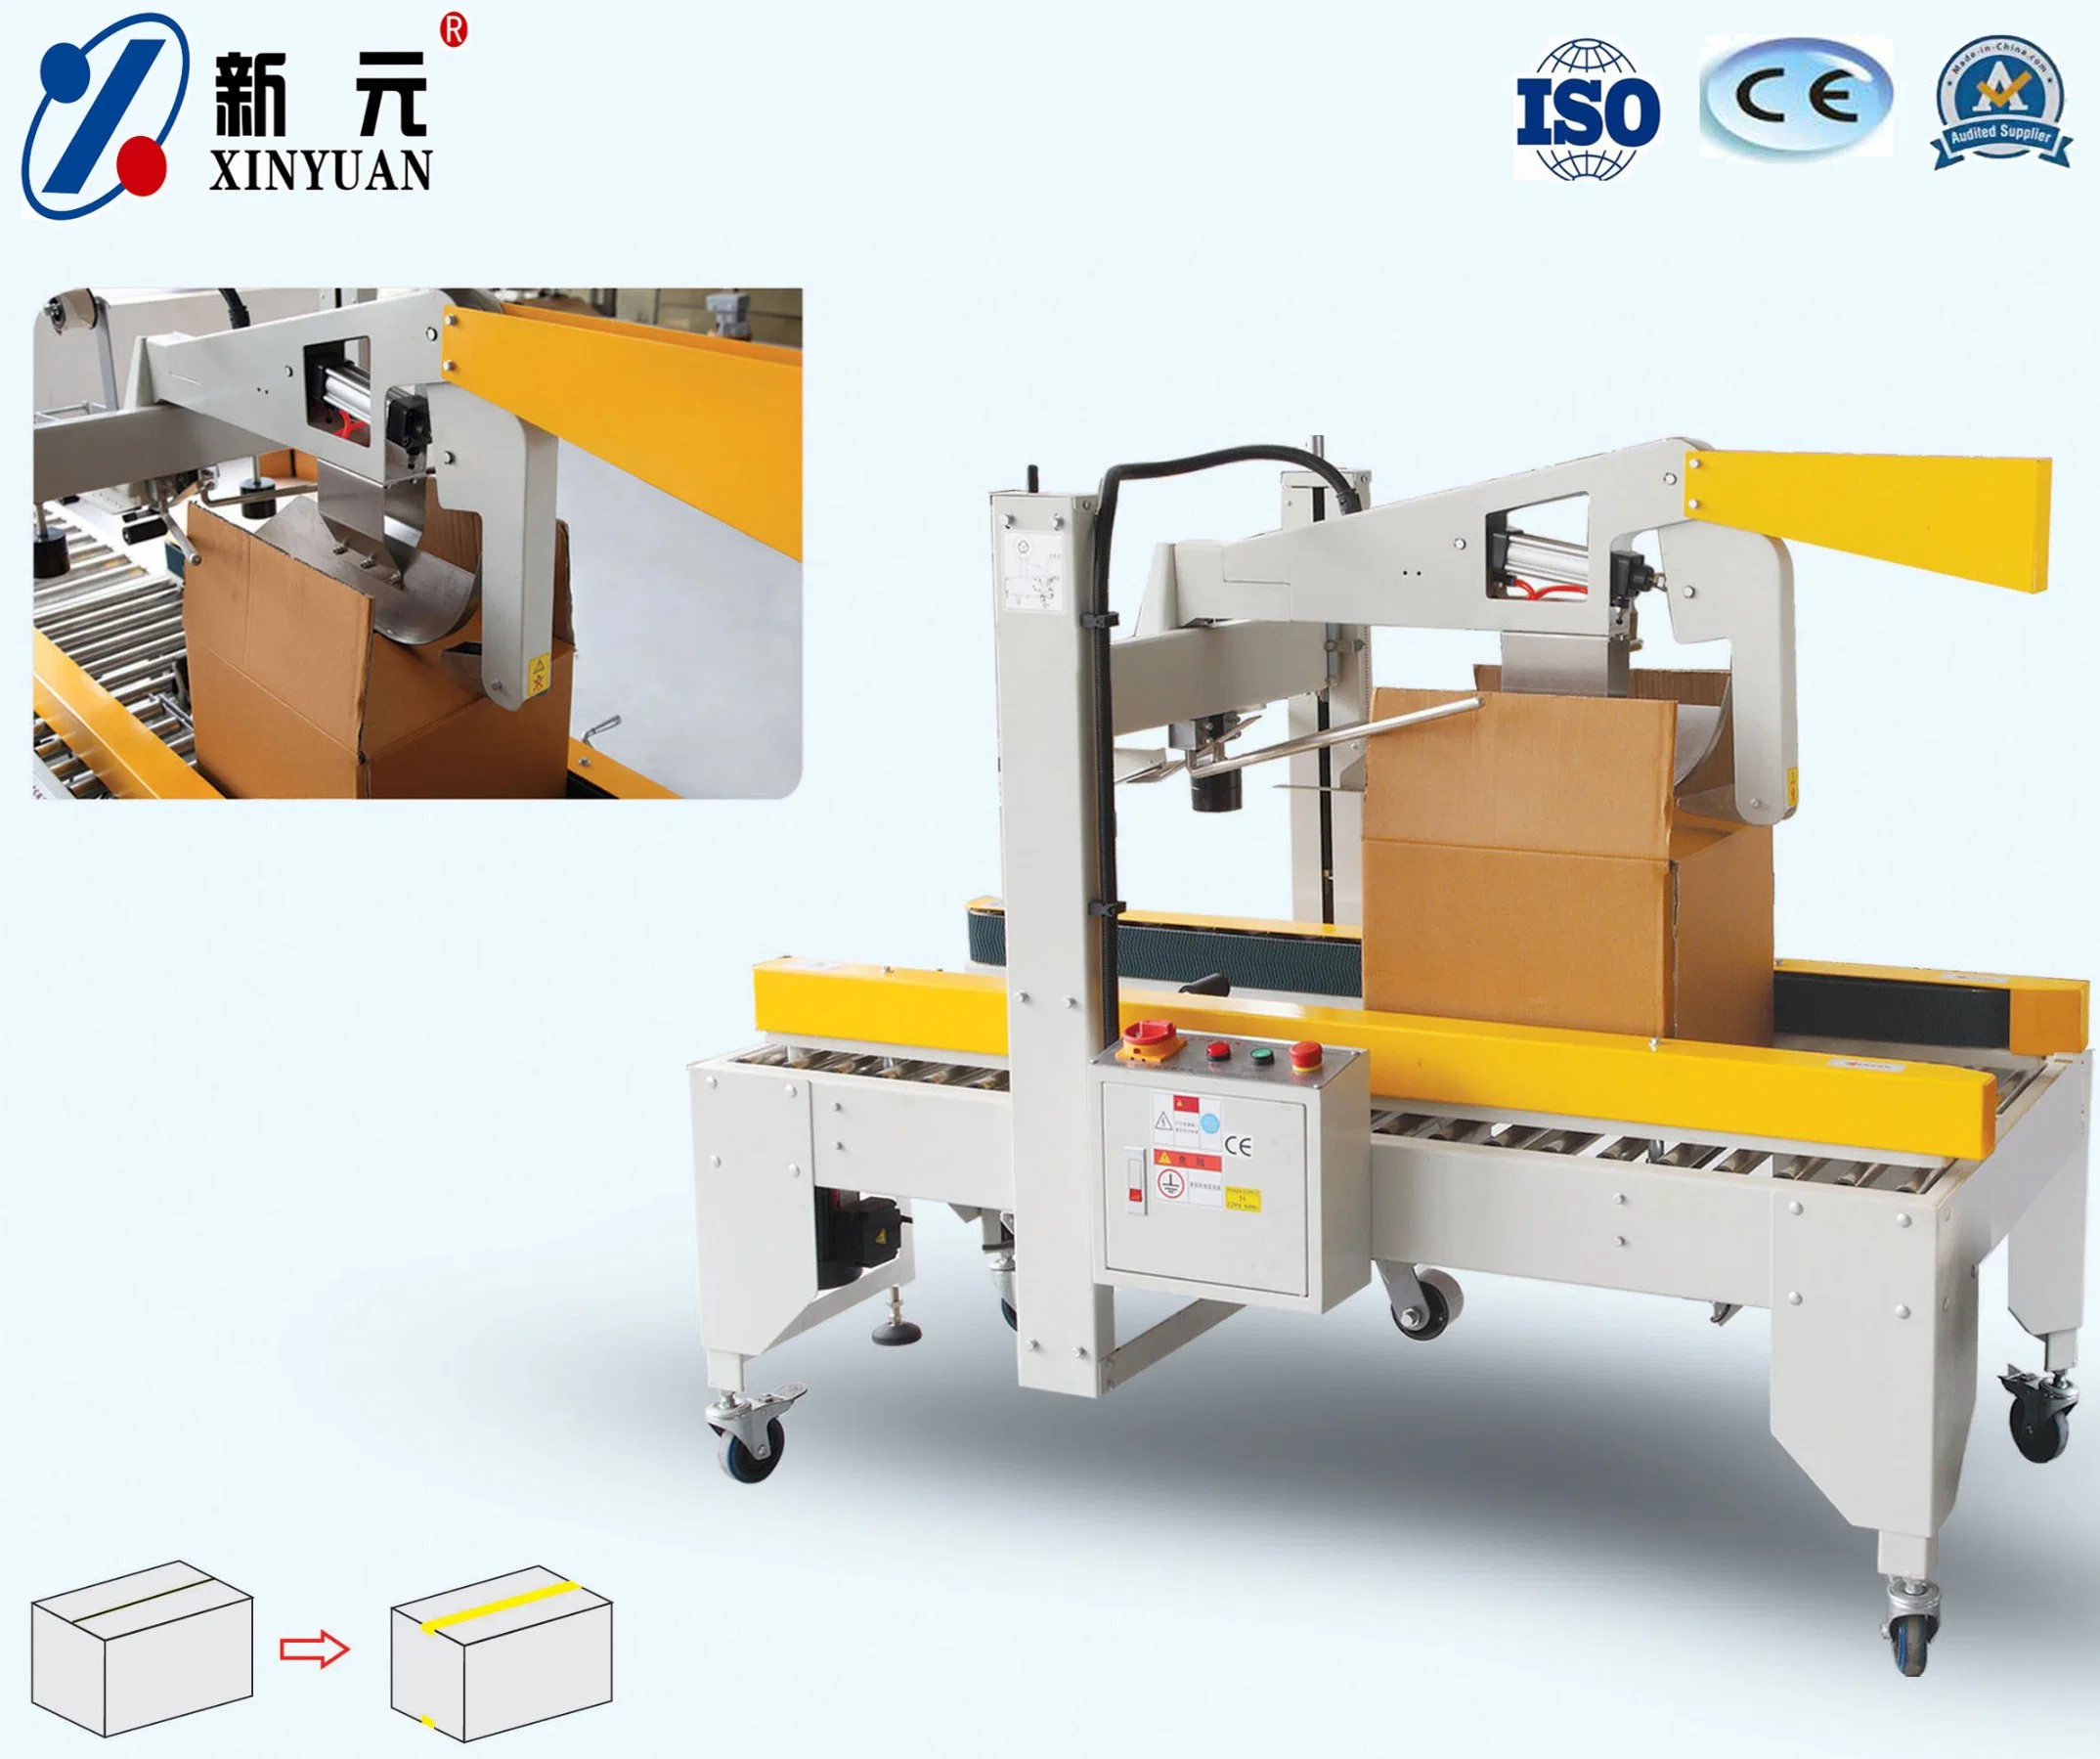 Xinyuan Fabrik Gemacht Fall Karton Verpackung Verpackung Verschließmaschine